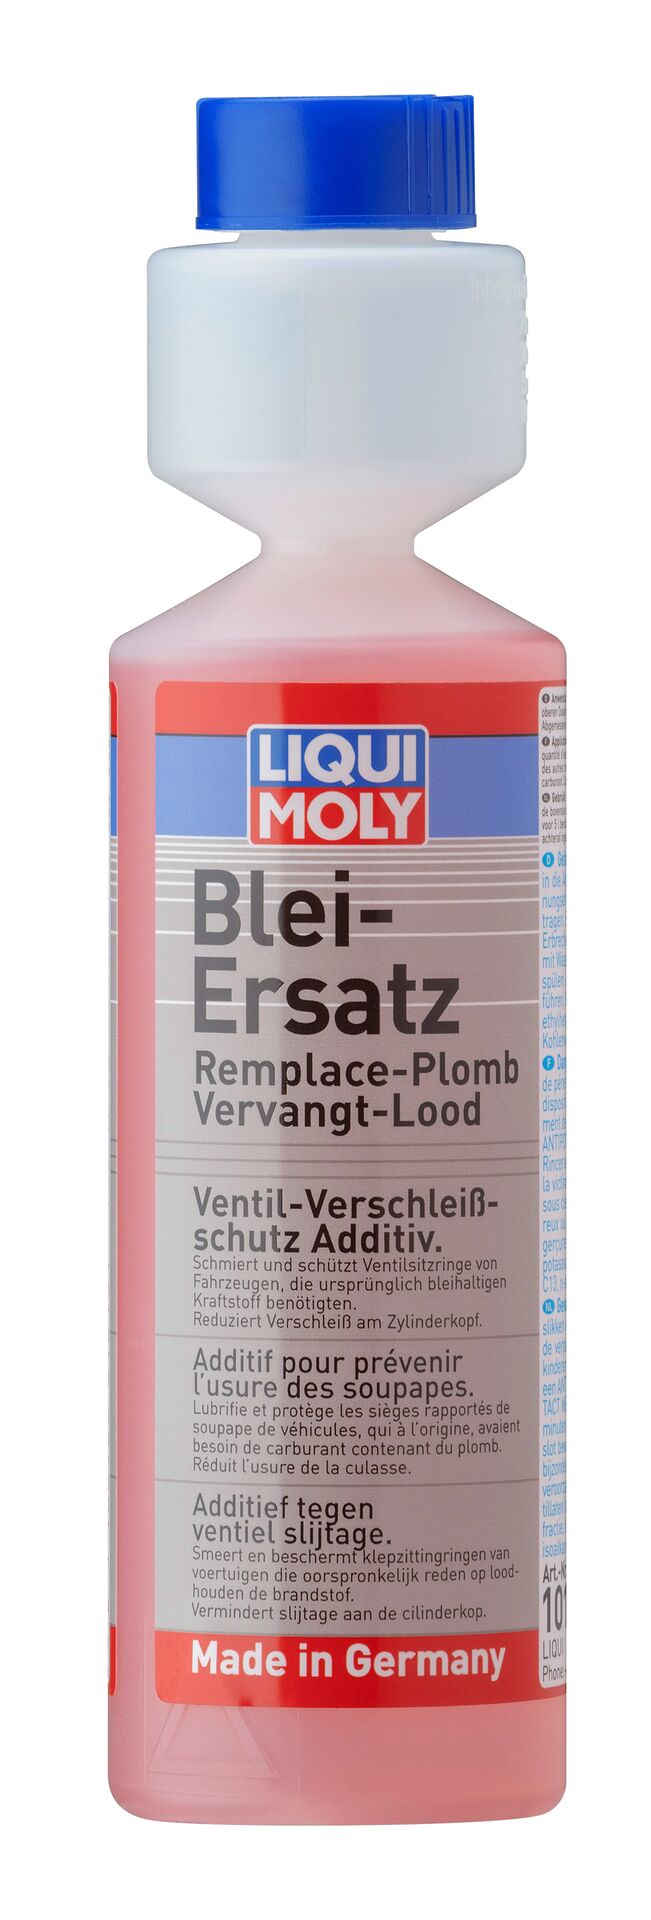 Liqui Moly Blei-Ersatz Dosierflasche 1x 250 ml 1010